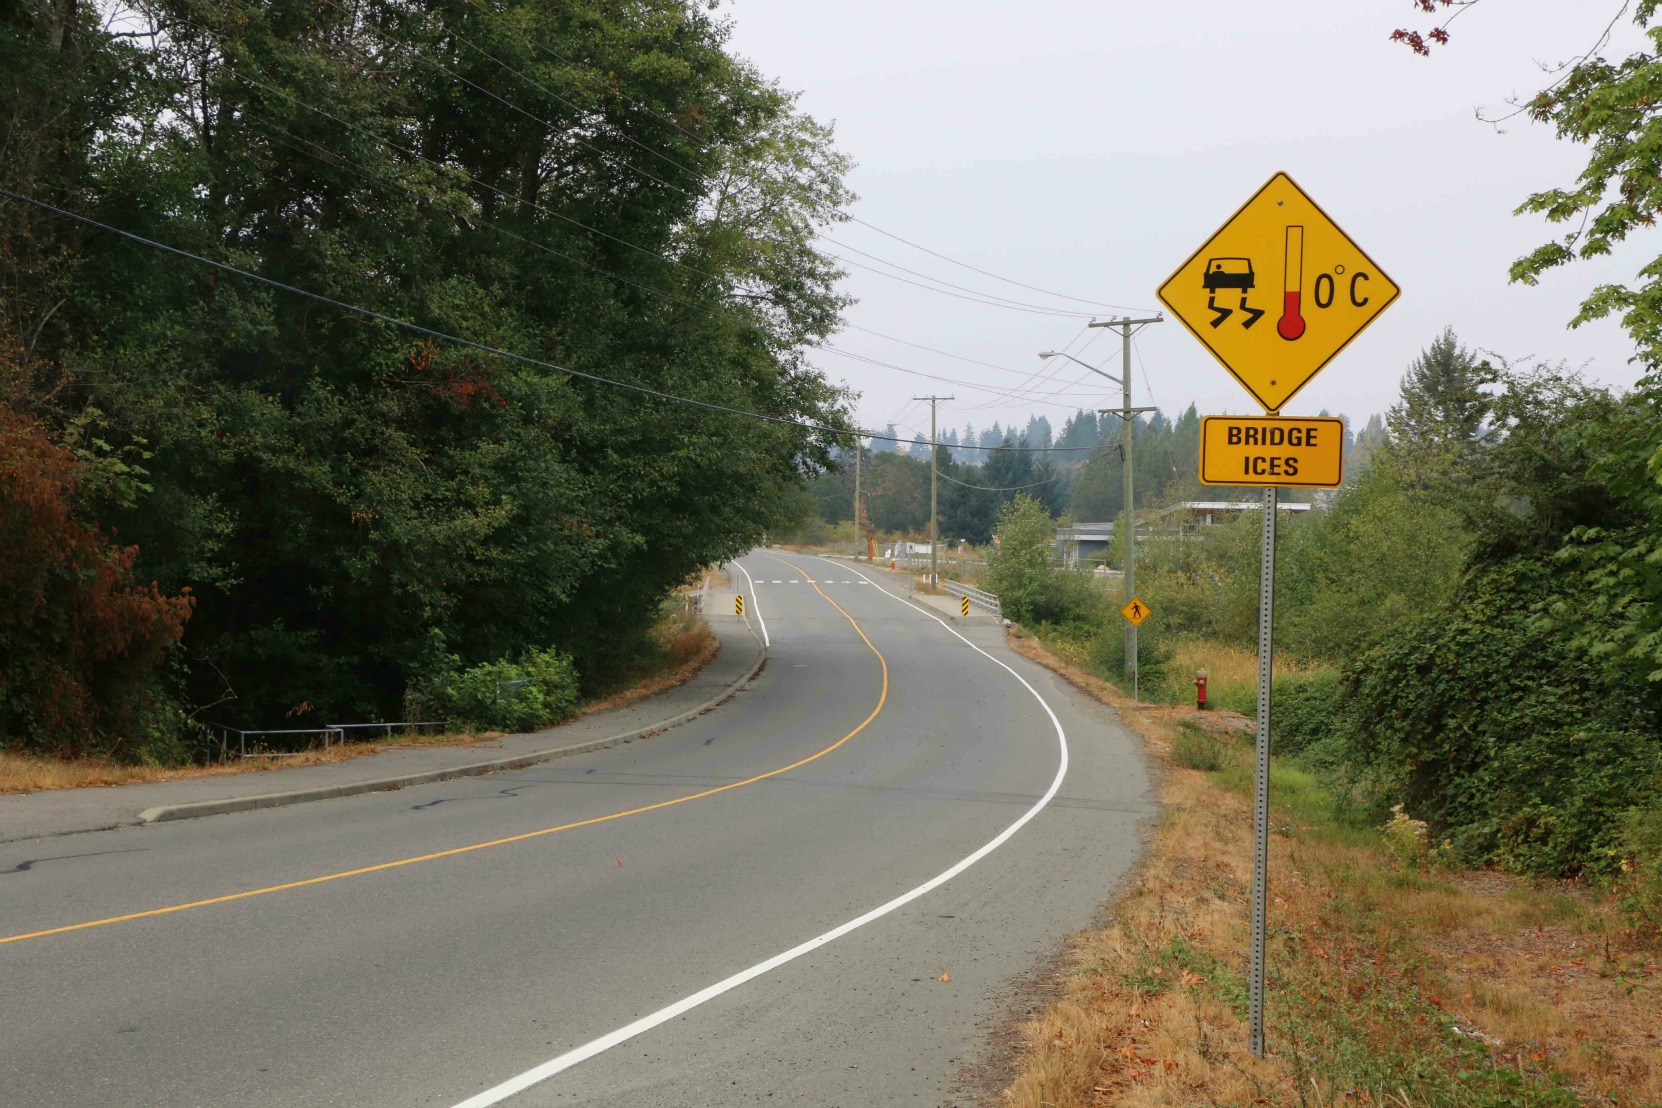 Bridge Ices, advisory sign, Nanaimo, B.C. (photo by West Coast Driver Training & Education)